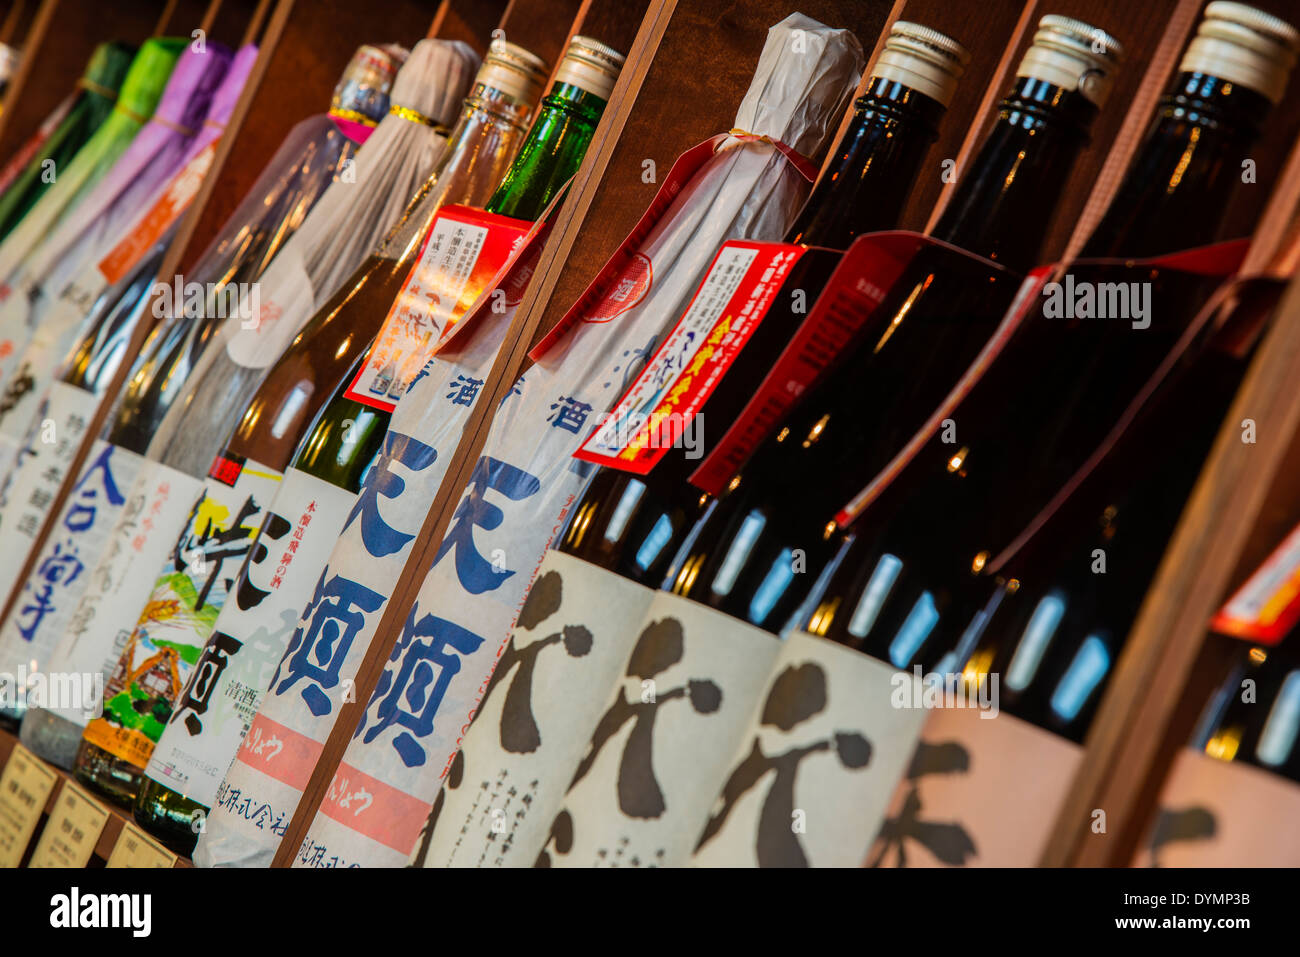 Sake bottles in a sake brewery, Takayama, Gifu Prefecture, Japan Stock Photo